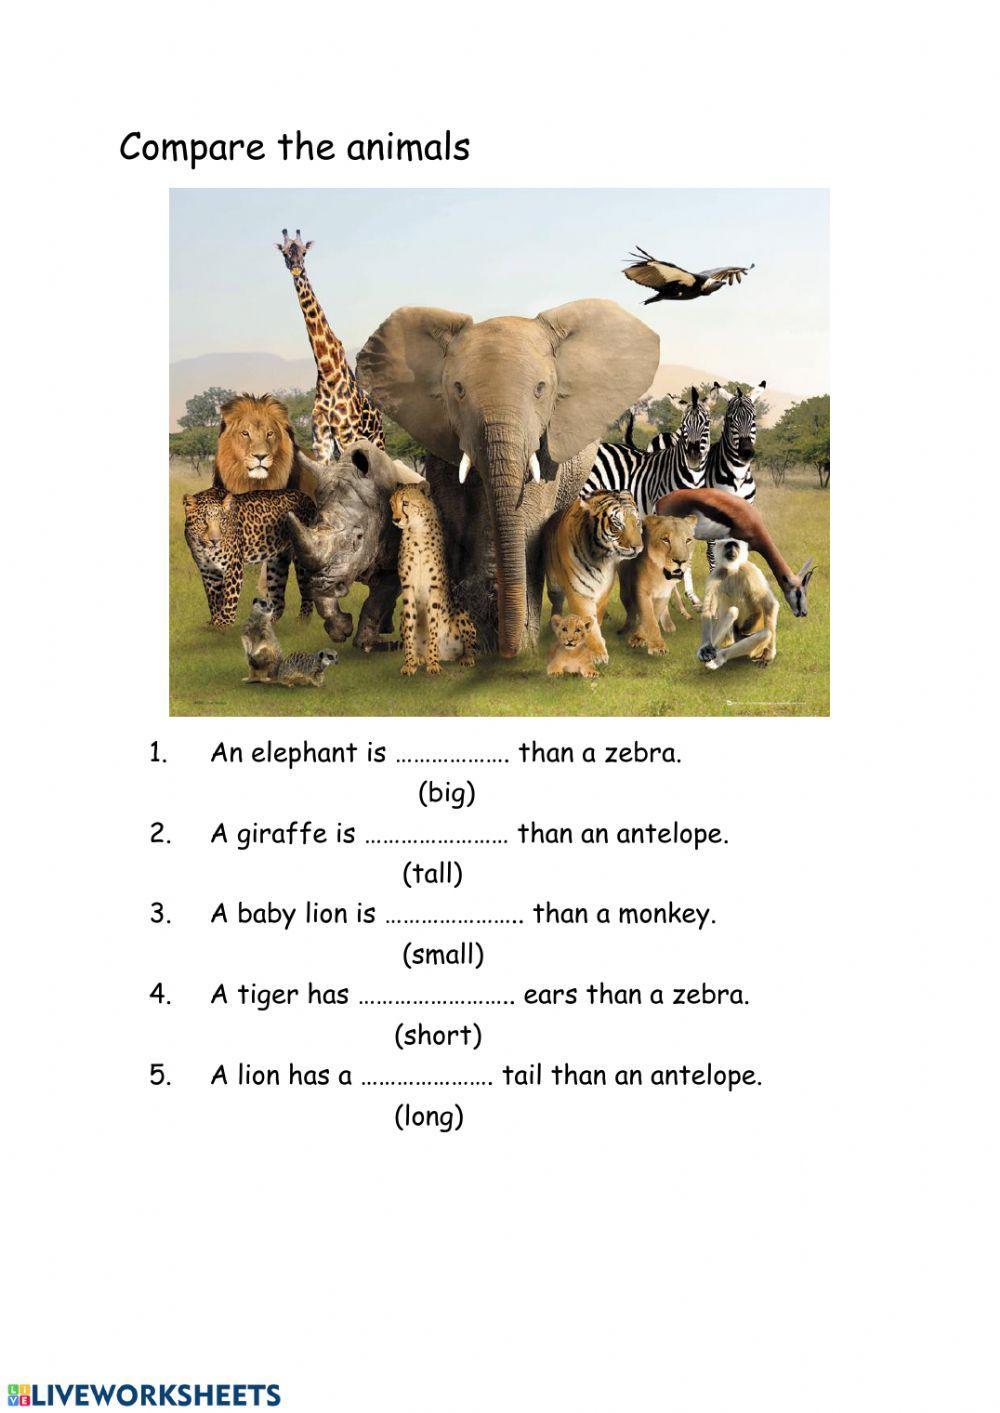 Compare animals